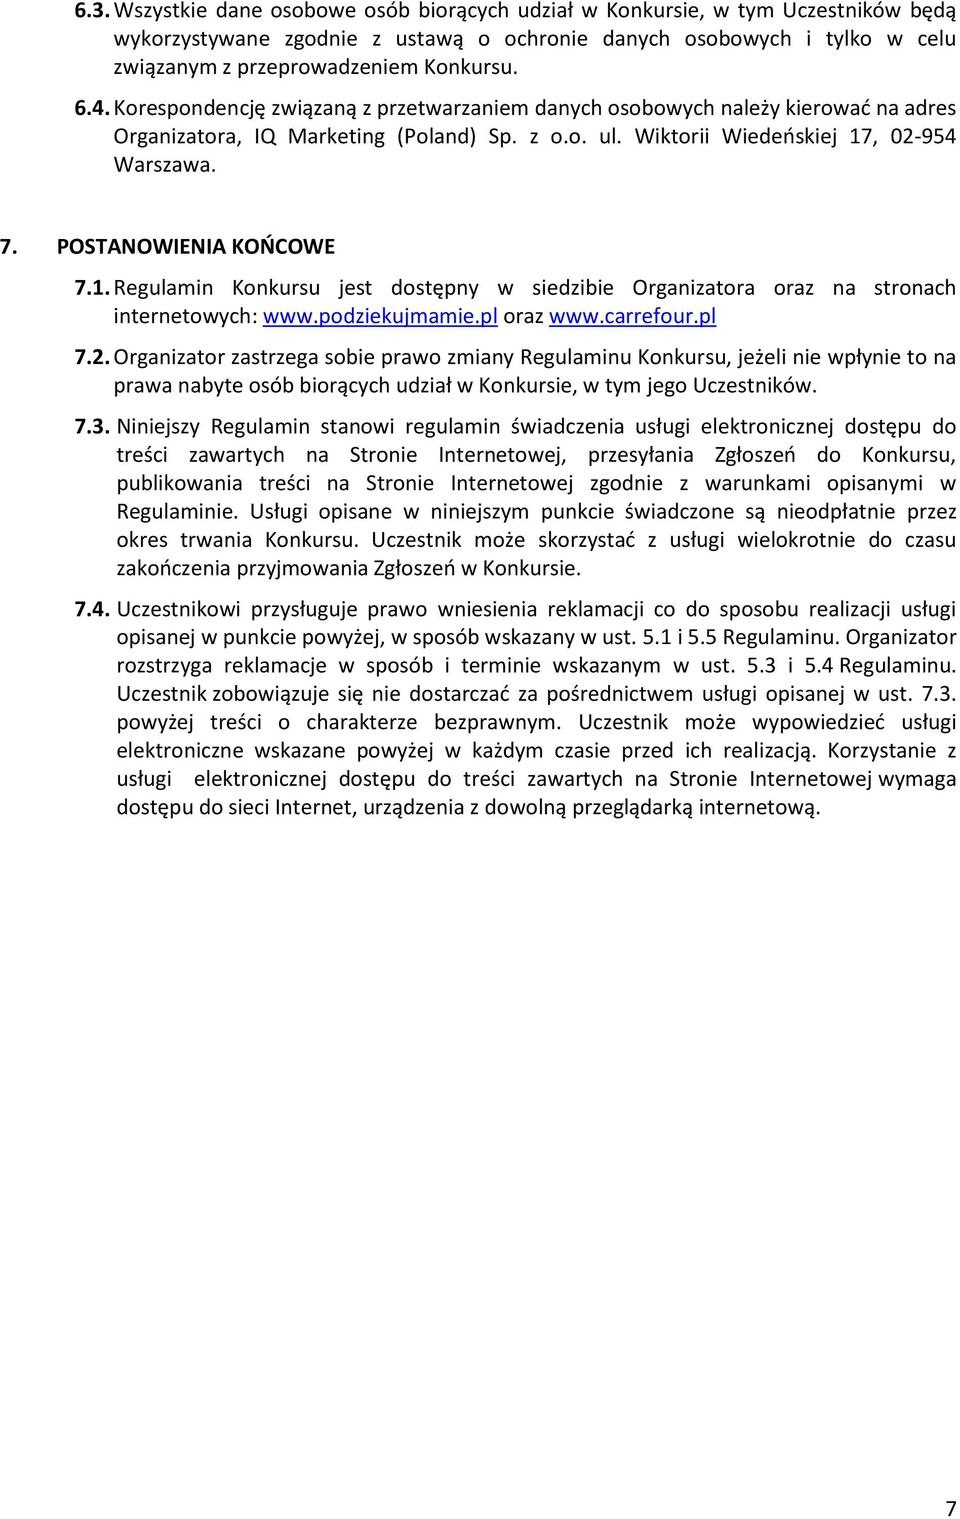 POSTANOWIENIA KOŃCOWE 7.1. Regulamin Konkursu jest dostępny w siedzibie Organizatora oraz na stronach internetowych: www.podziekujmamie.pl oraz www.carrefour.pl 7.2.